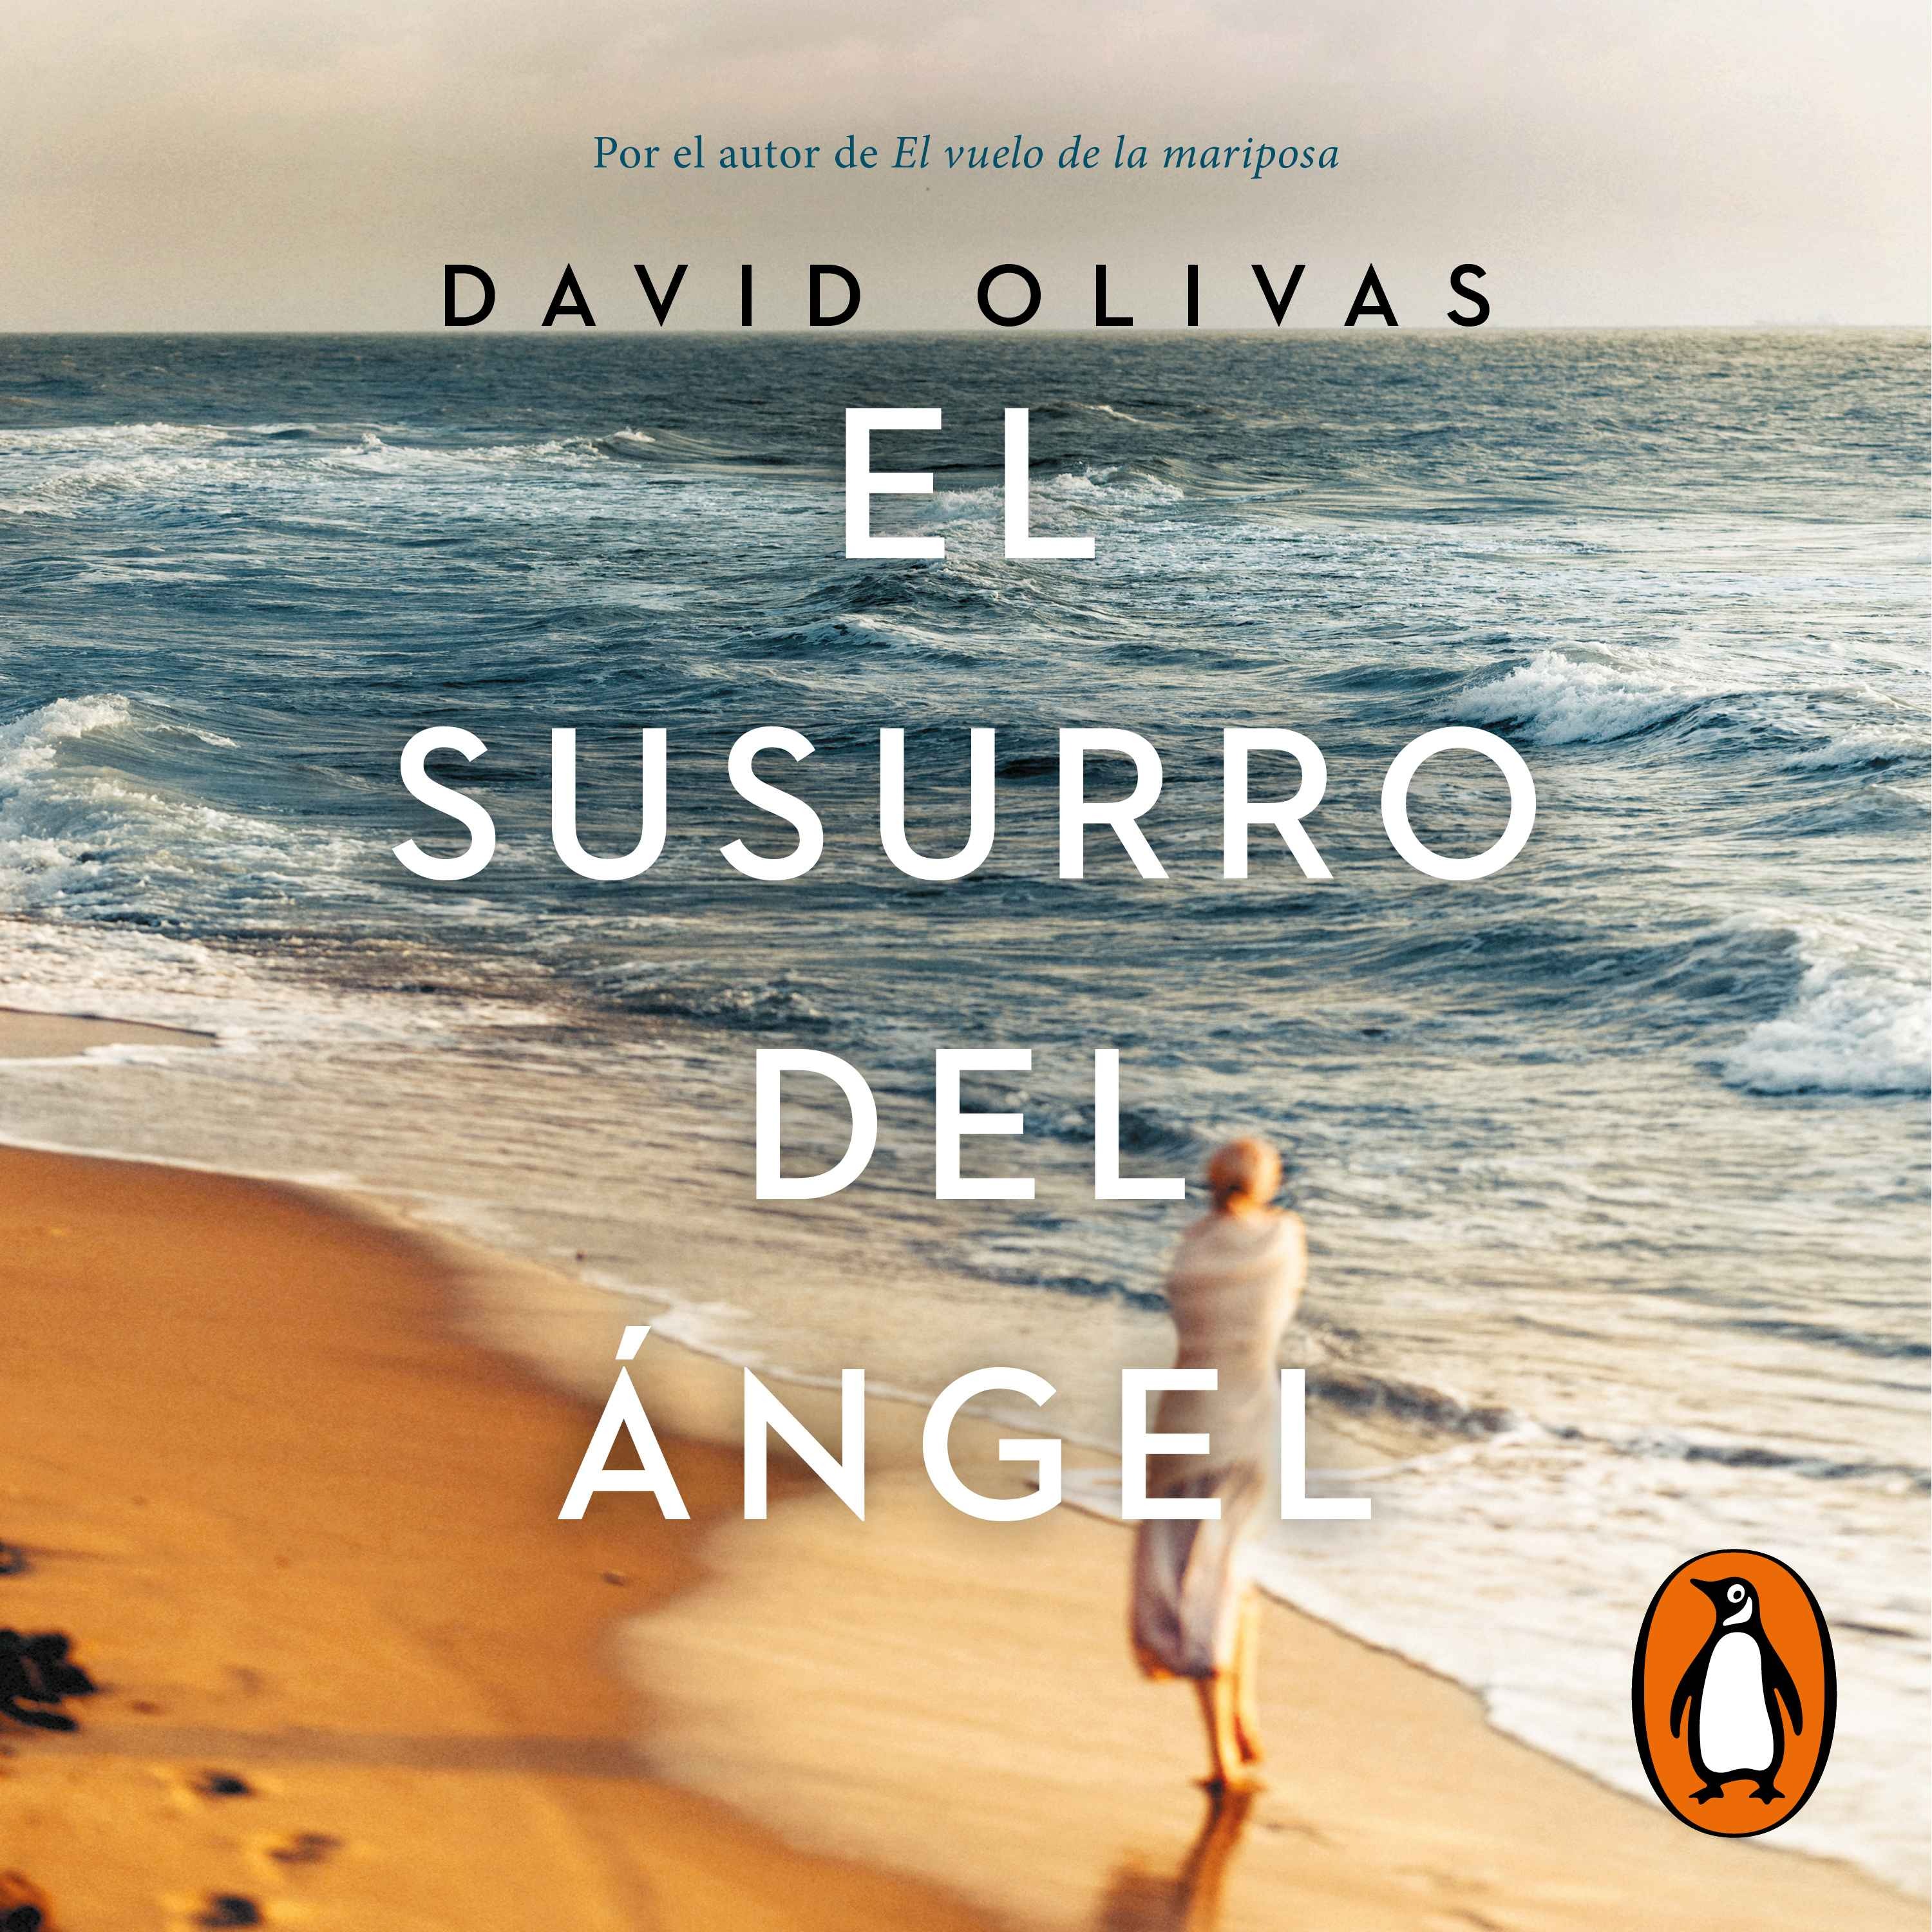 cover art for Audiolibro: "El susurro del ángel" de David Olivas